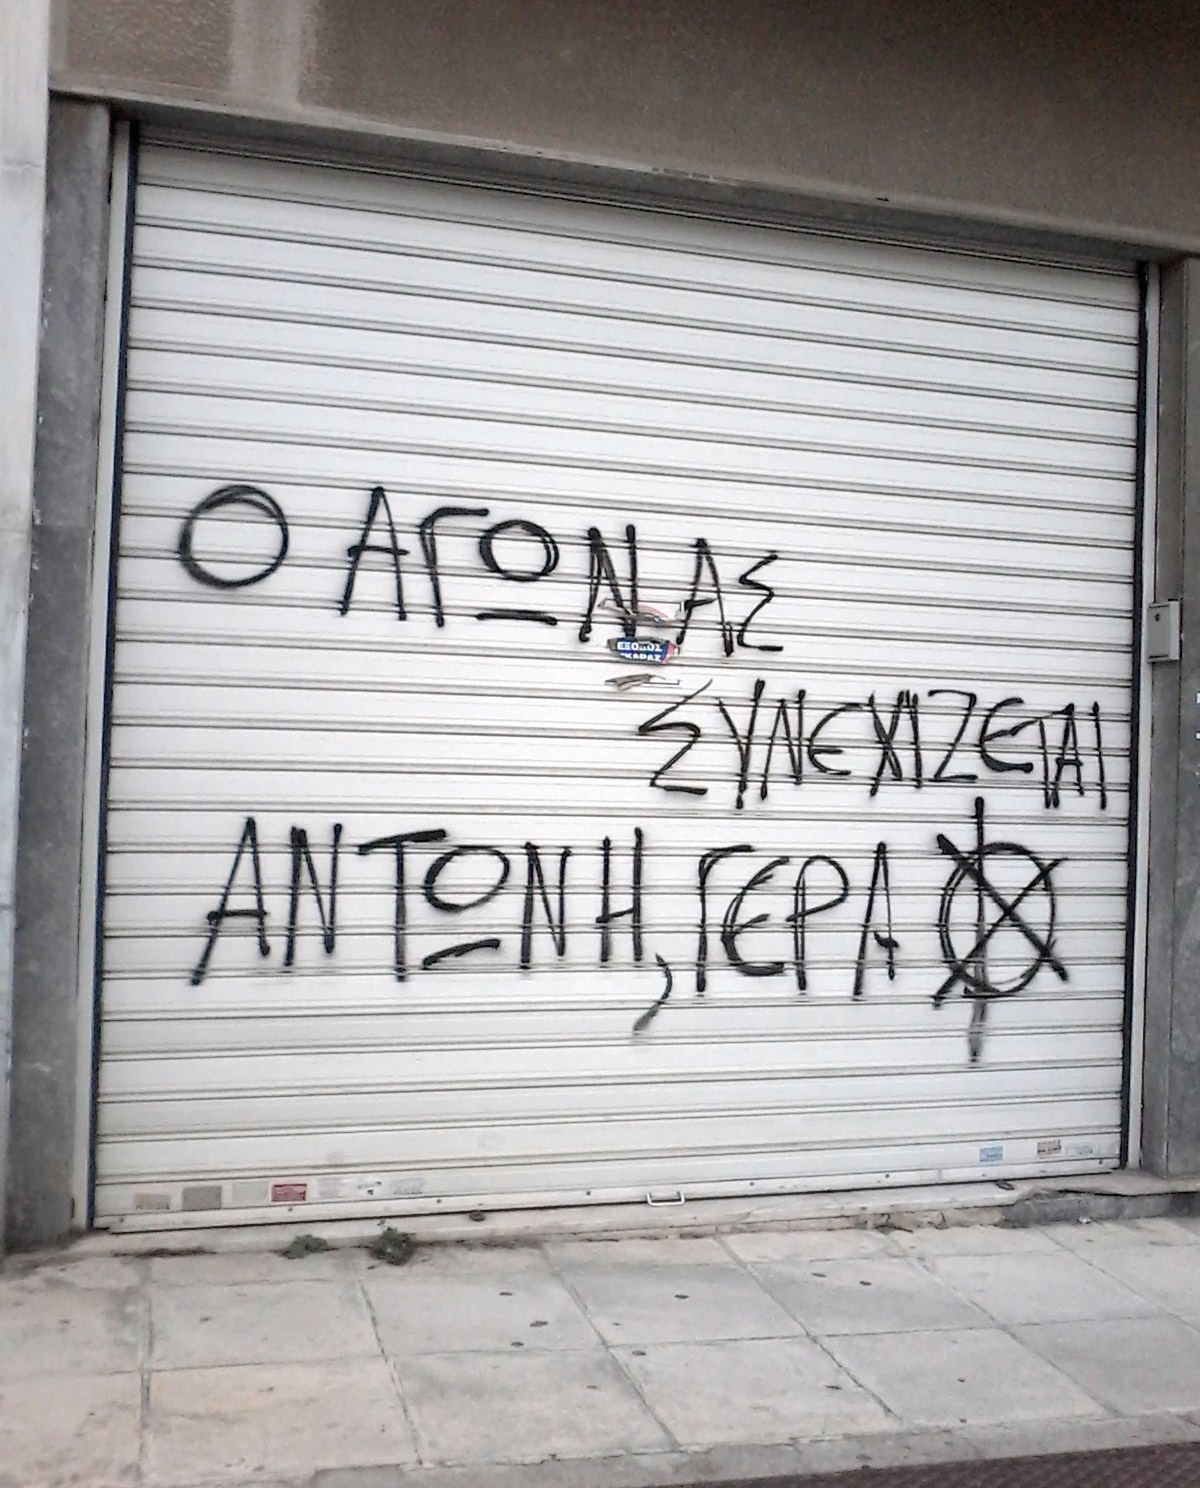 Athen, Griechenland: Anarchistischer Gefangener Antonis Stamboulos beginnt Hunger- und Durststreik